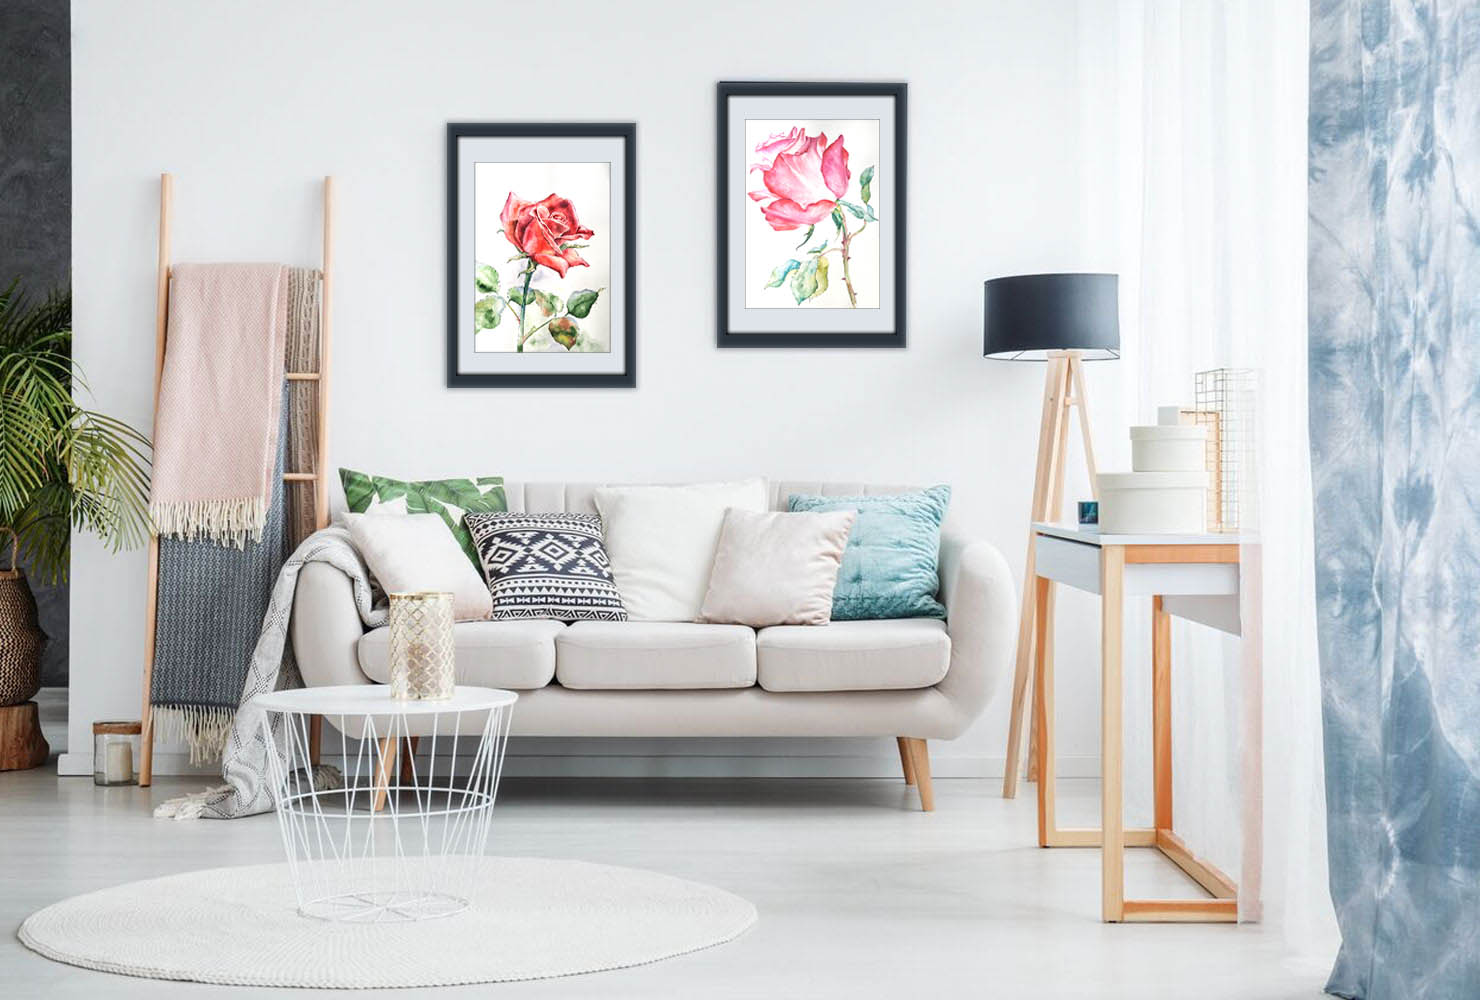 Hướng dẫn Vẽ cách điệu hoa hồng đẹp lung linh cho phòng khách của bạn